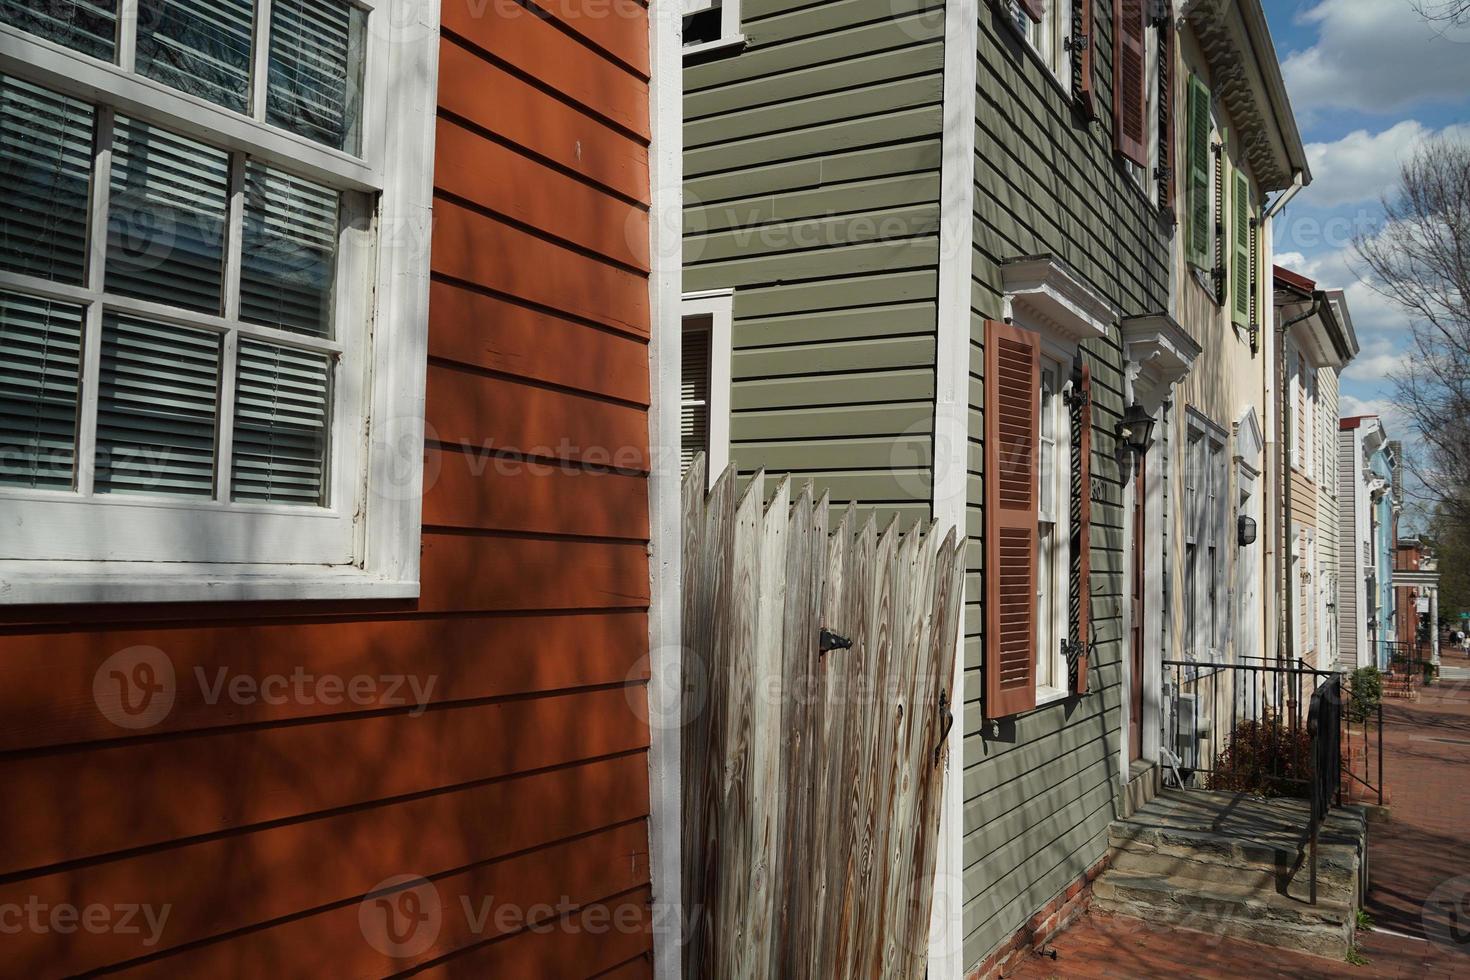 Washington Georgetown pintado casas detalhe foto